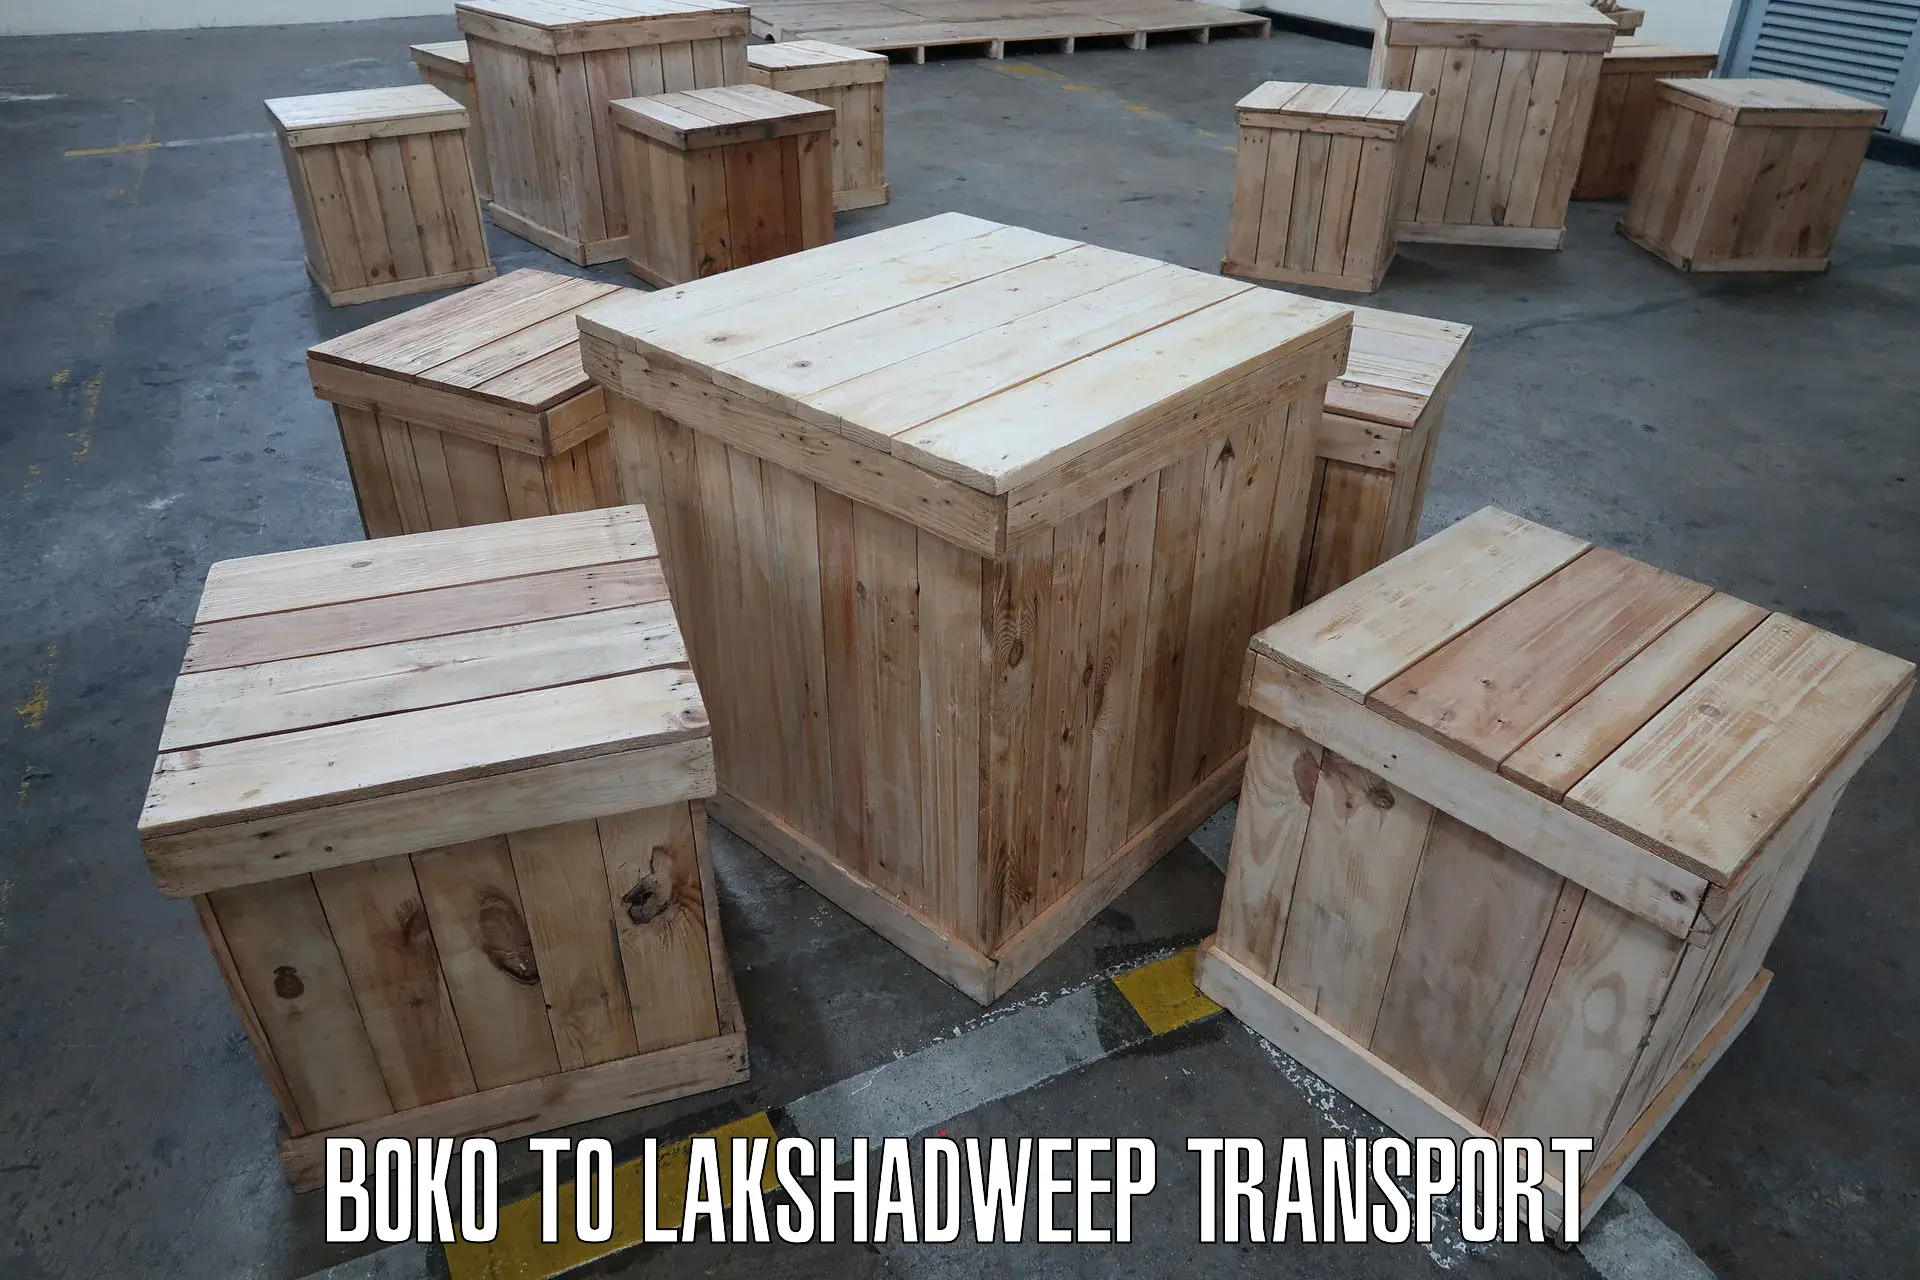 Cycle transportation service Boko to Lakshadweep